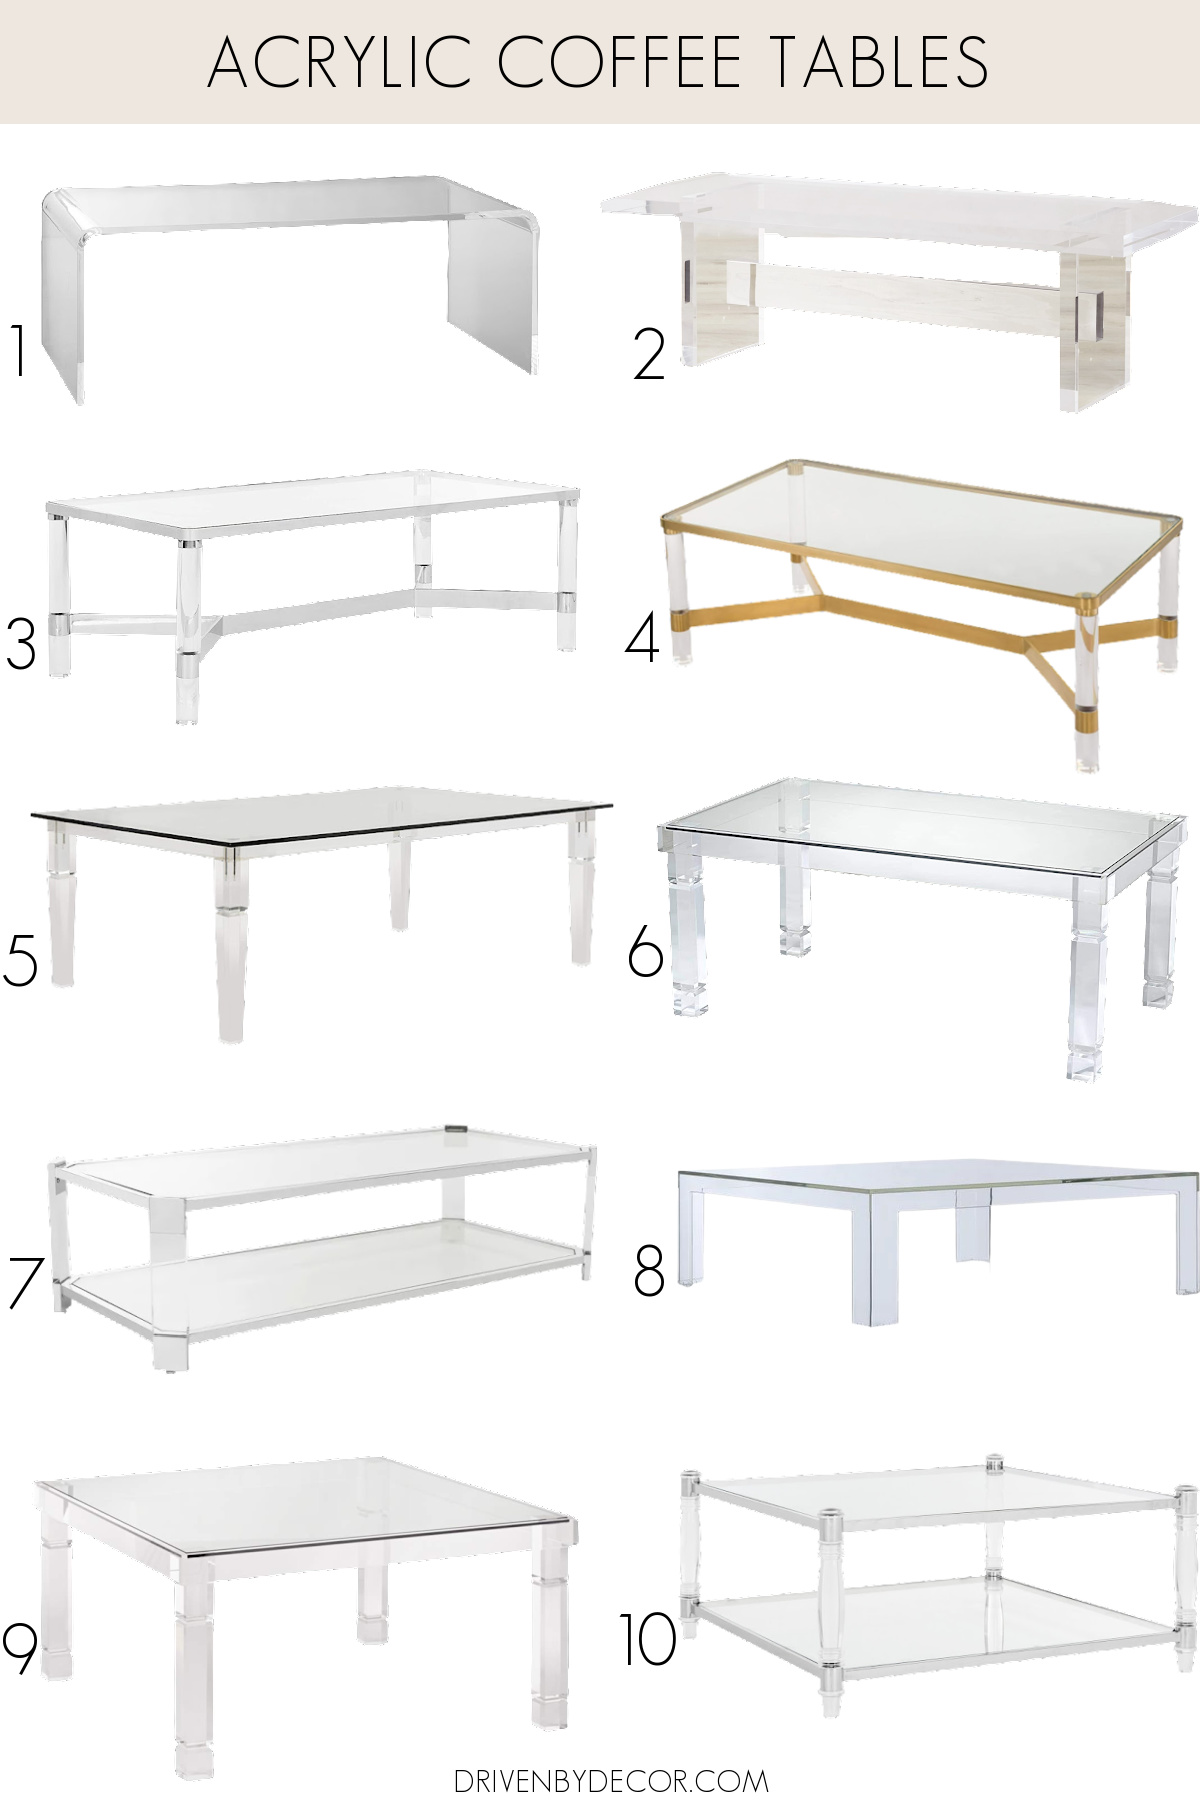 Ten acrylic coffee table options